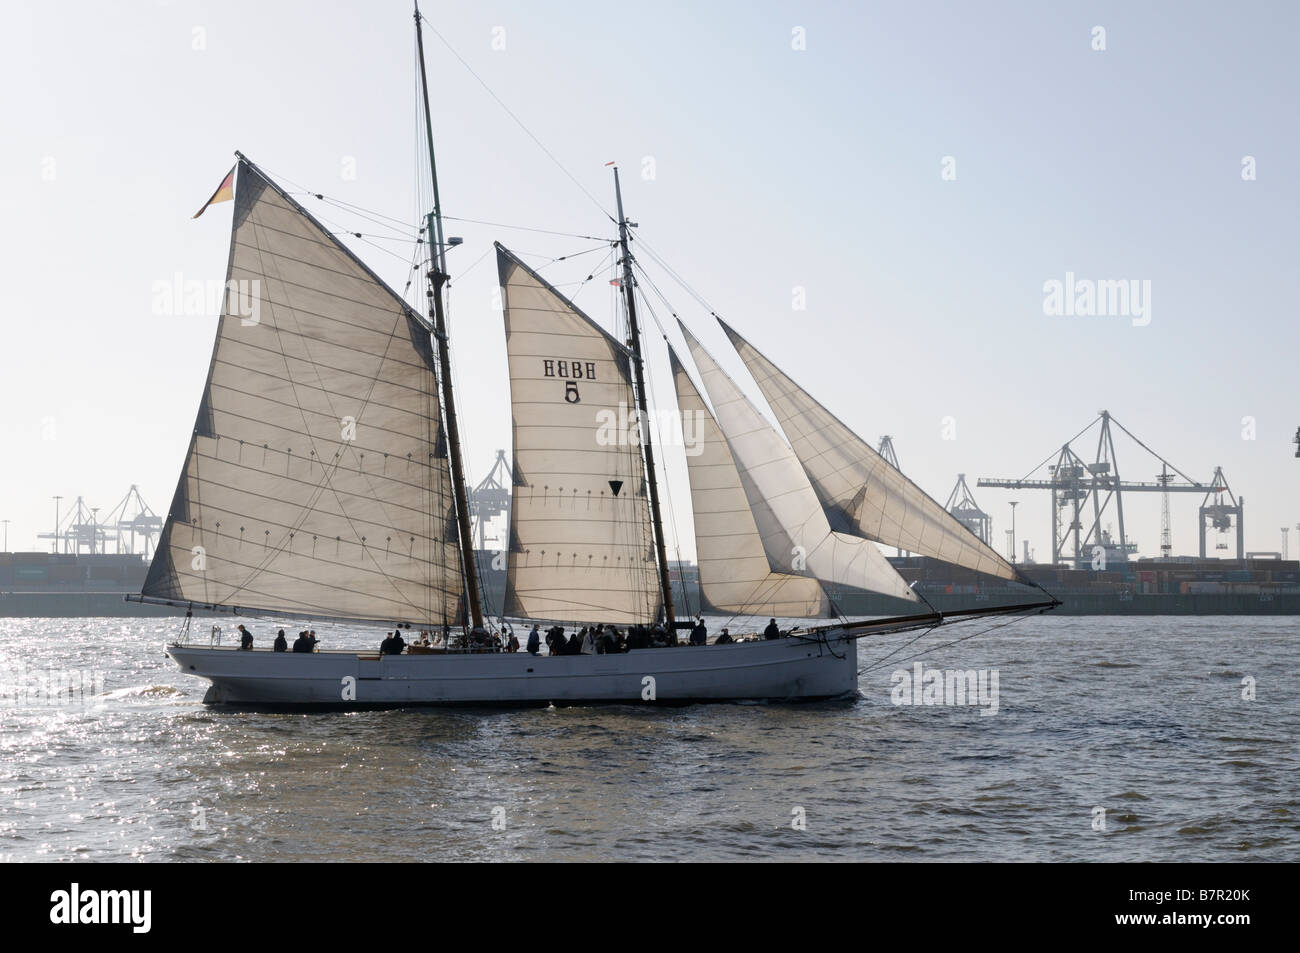 Pilot schooner Banque de photographies et d'images à haute résolution -  Alamy